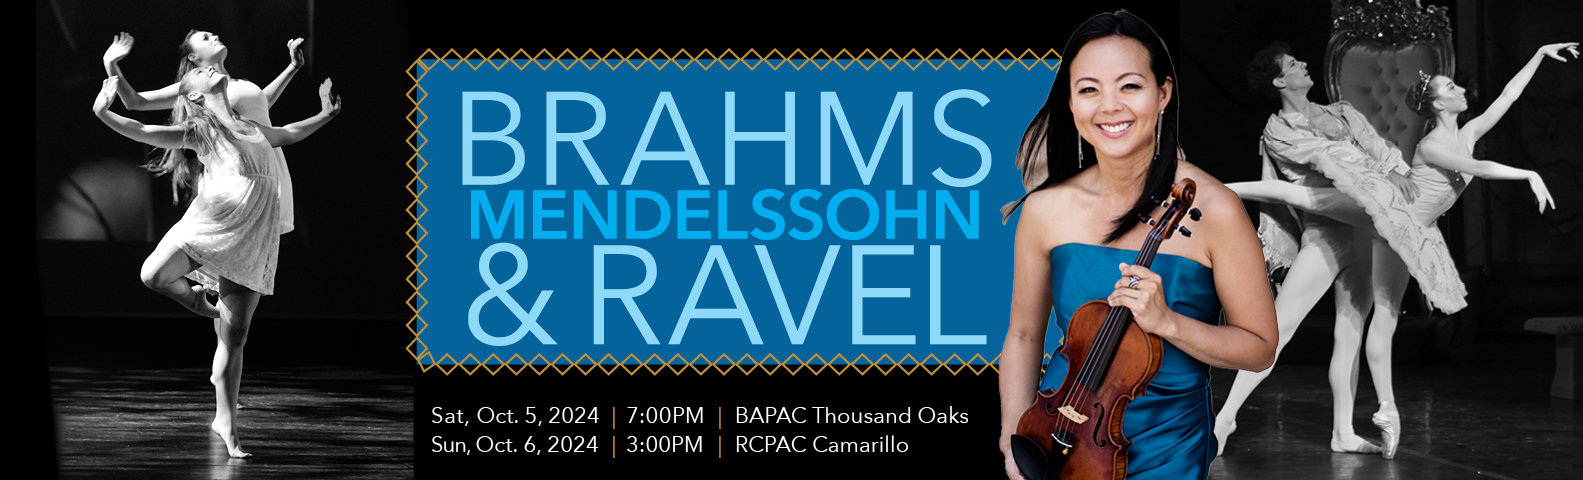 Brahms Mendelssohn & Ravel